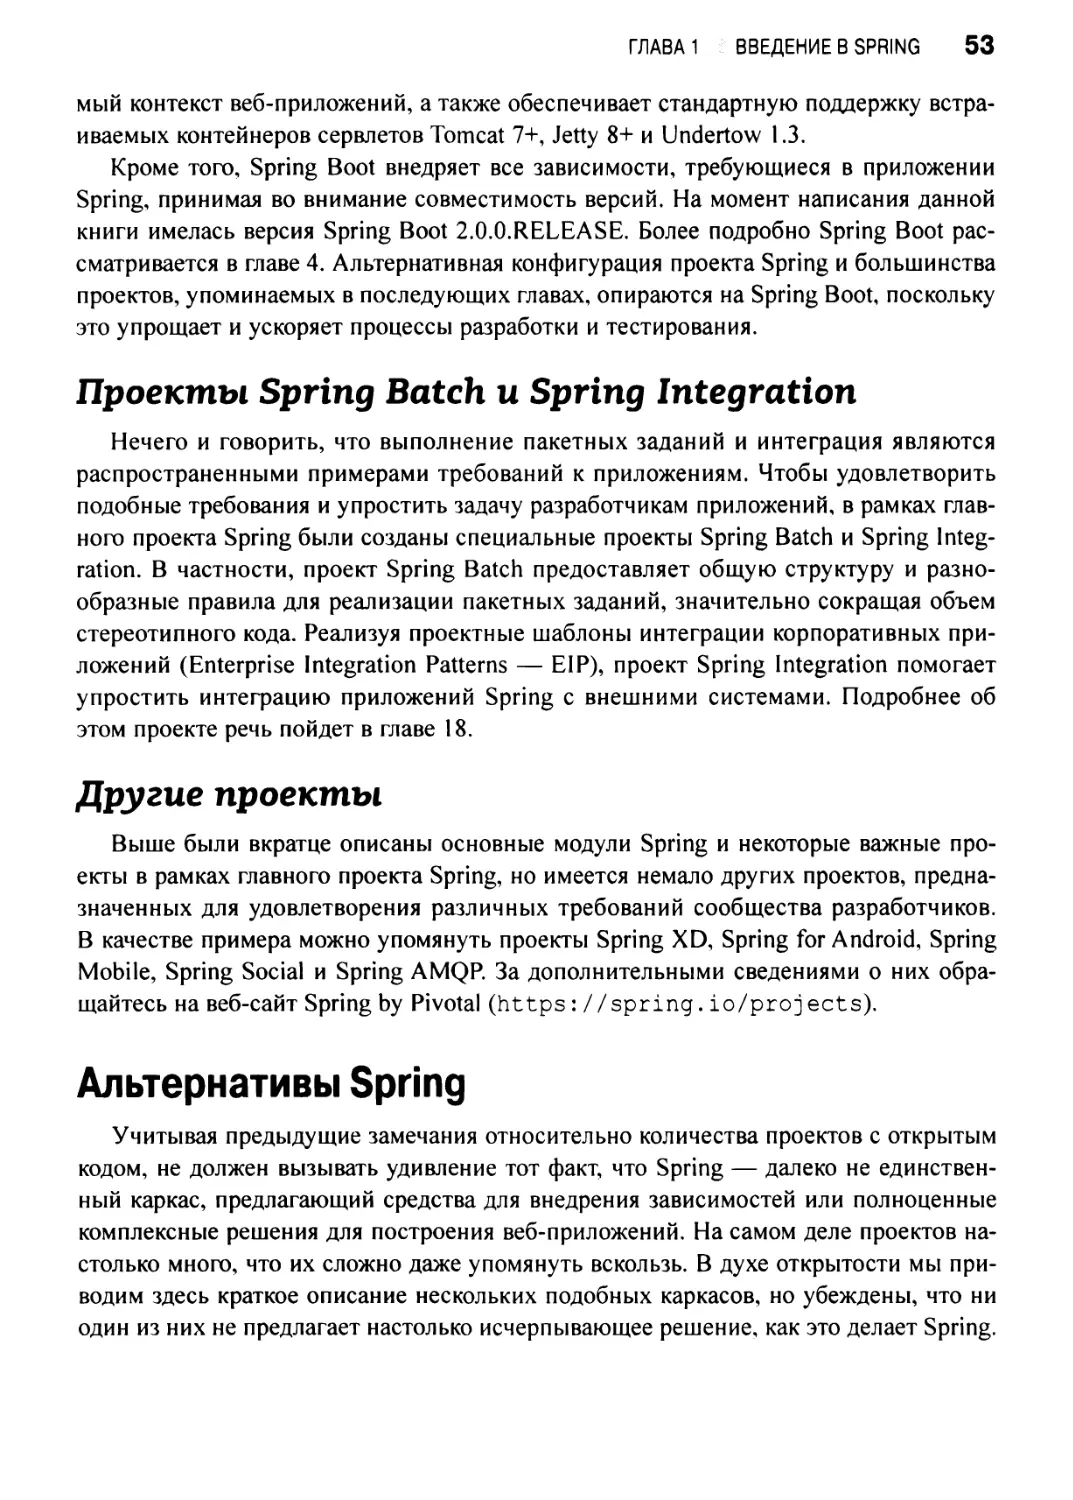 Проекты Spring Batch и Spring Integration
Другие проекты
Альтернативы Spring